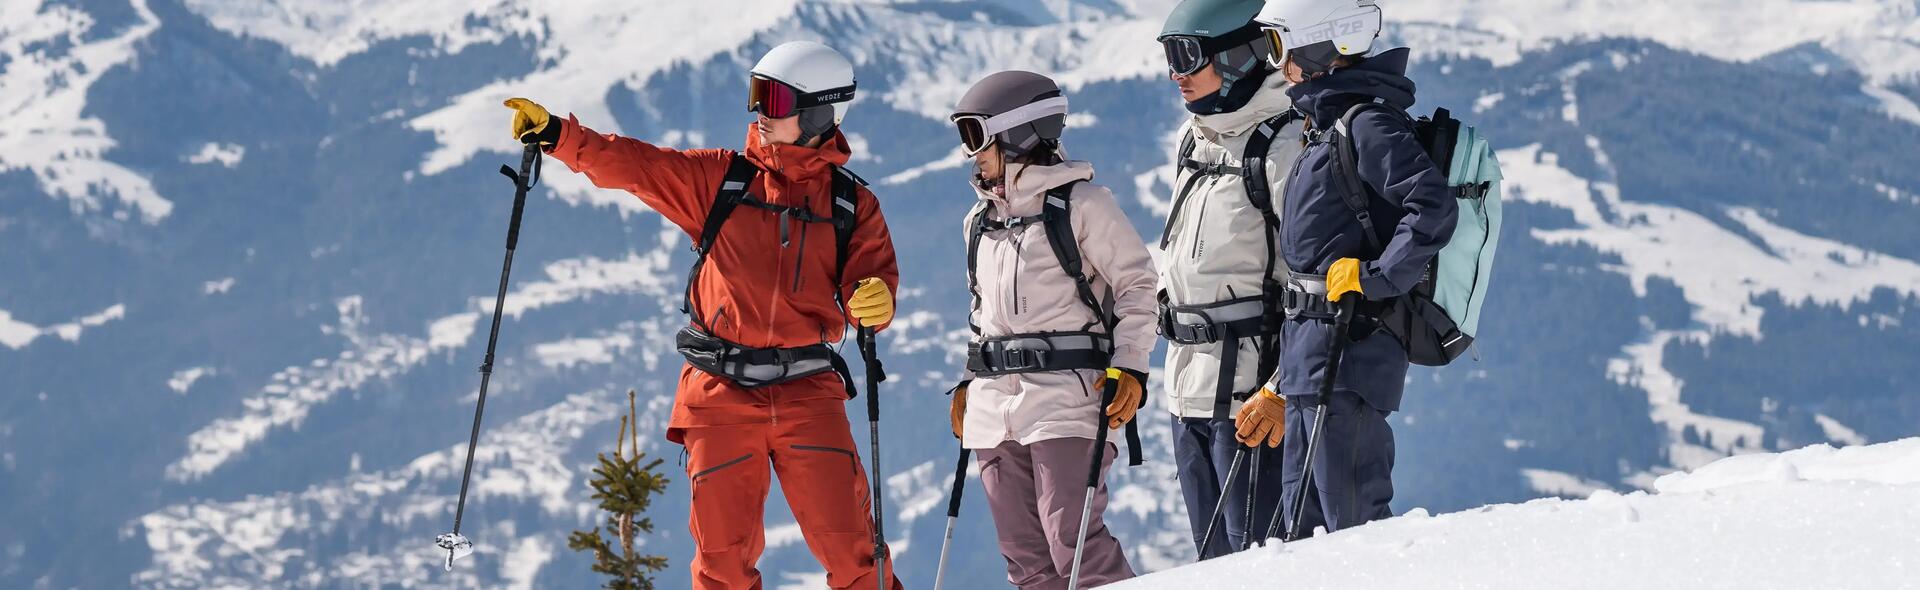 ludzie w strojach narciarskich z plecakami stoją w górach 